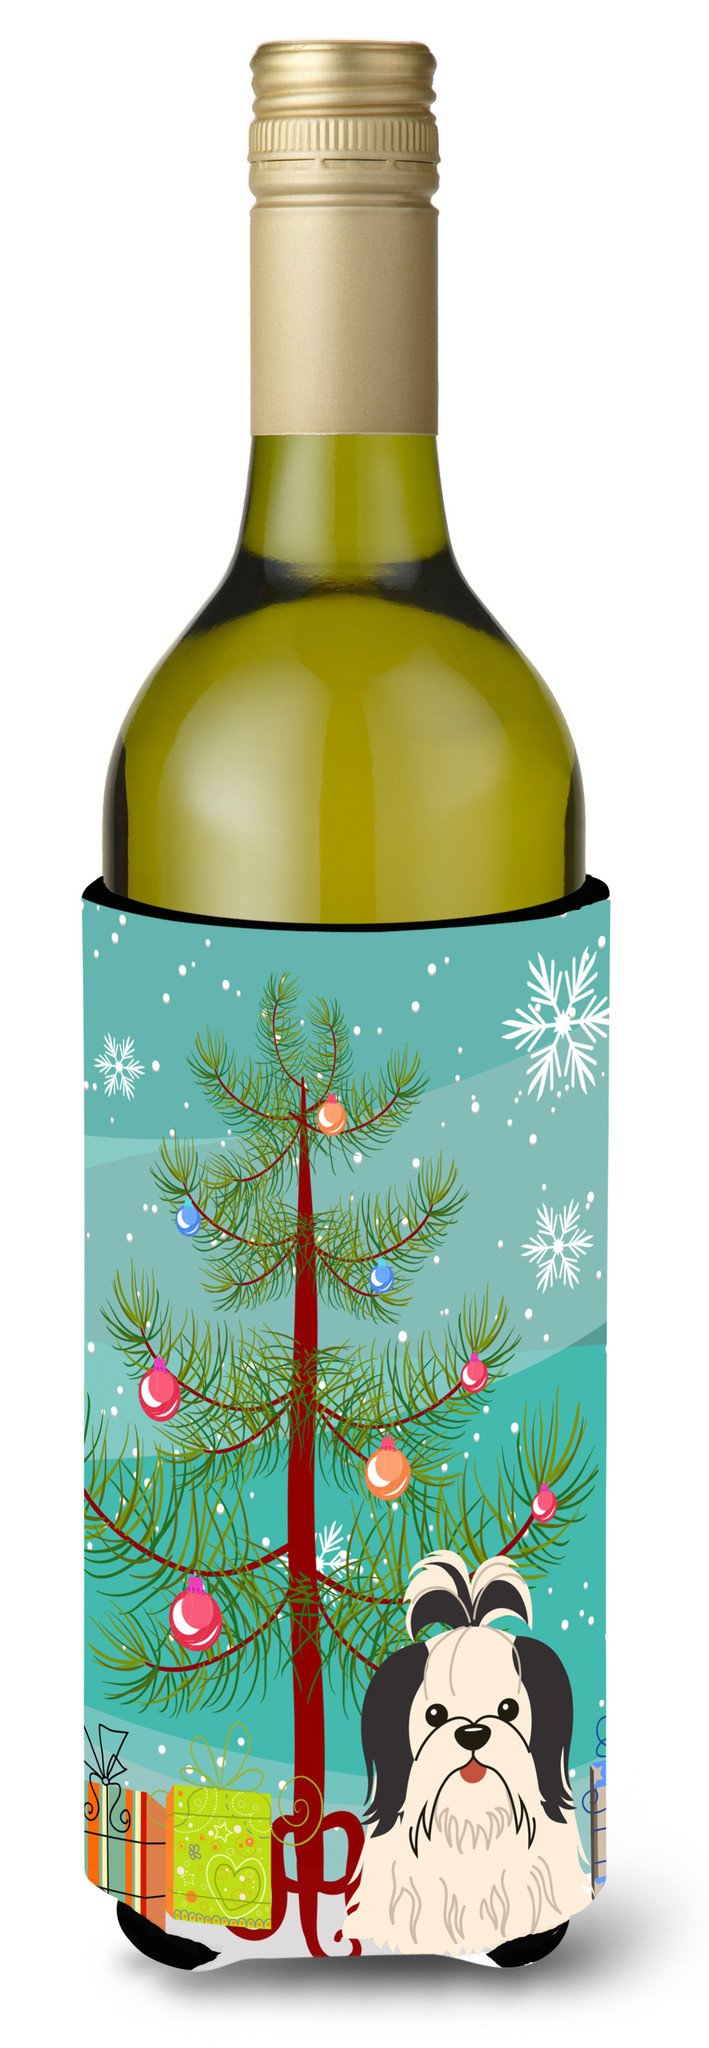 Merry Christmas Tree Shih Tzu Black White Wine Bottle Beverge Insulator Hugger BB4213LITERK by Caroline's Treasures